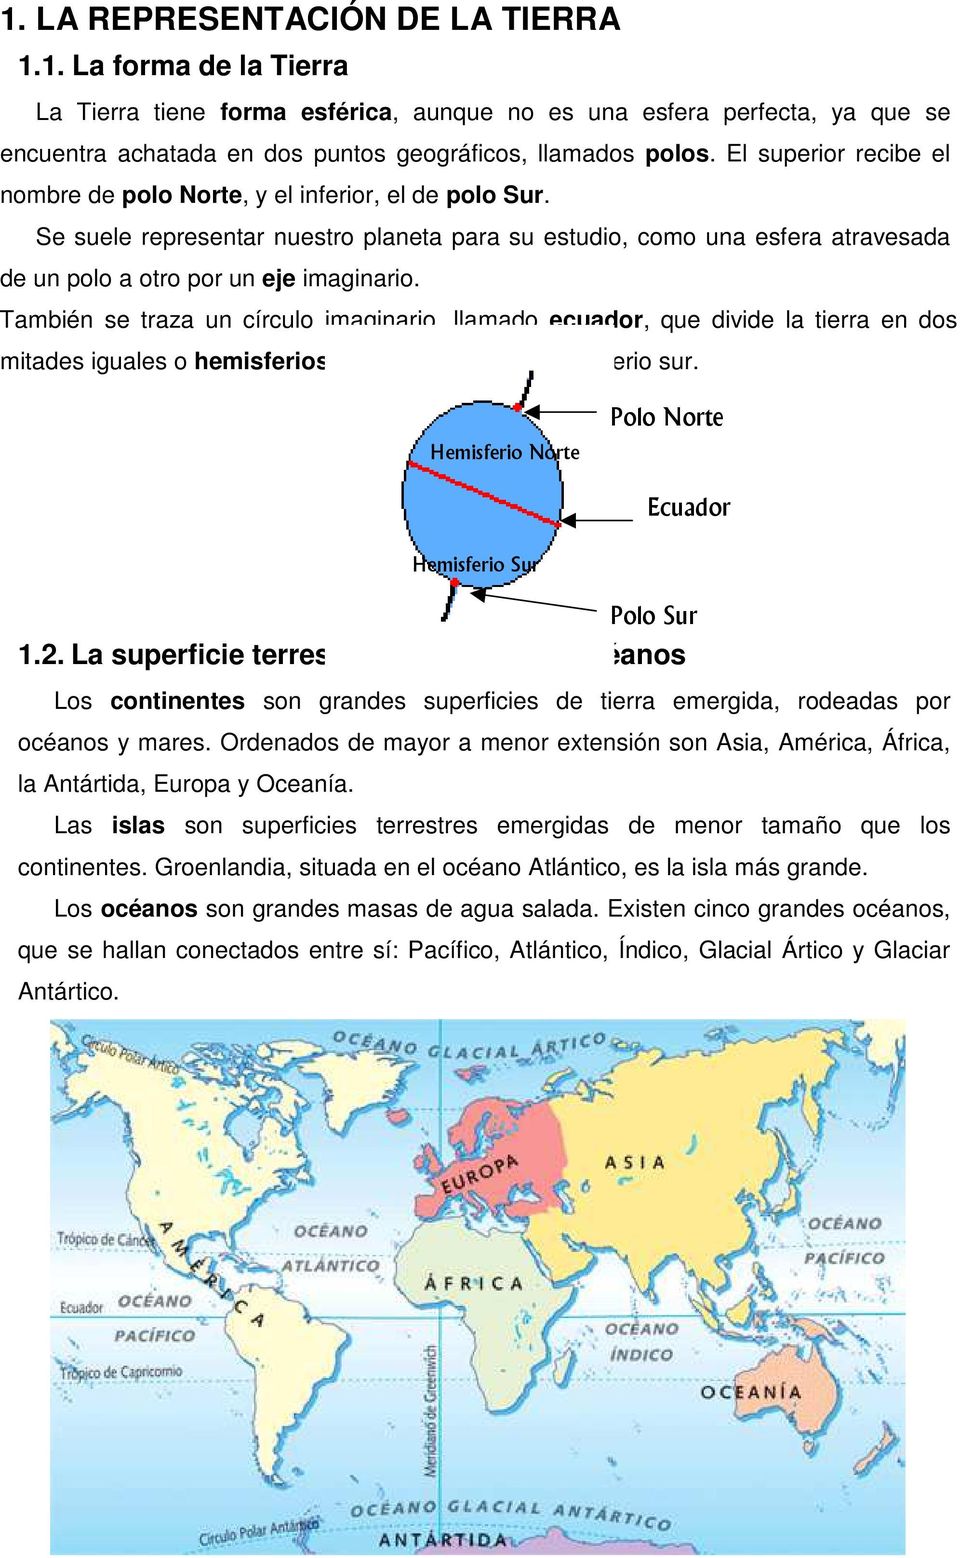 También se traza un círculo imaginario, llamado ecuador, que divide la tierra en dos mitades iguales o hemisferios: hemisferio norte y hemisferio sur.